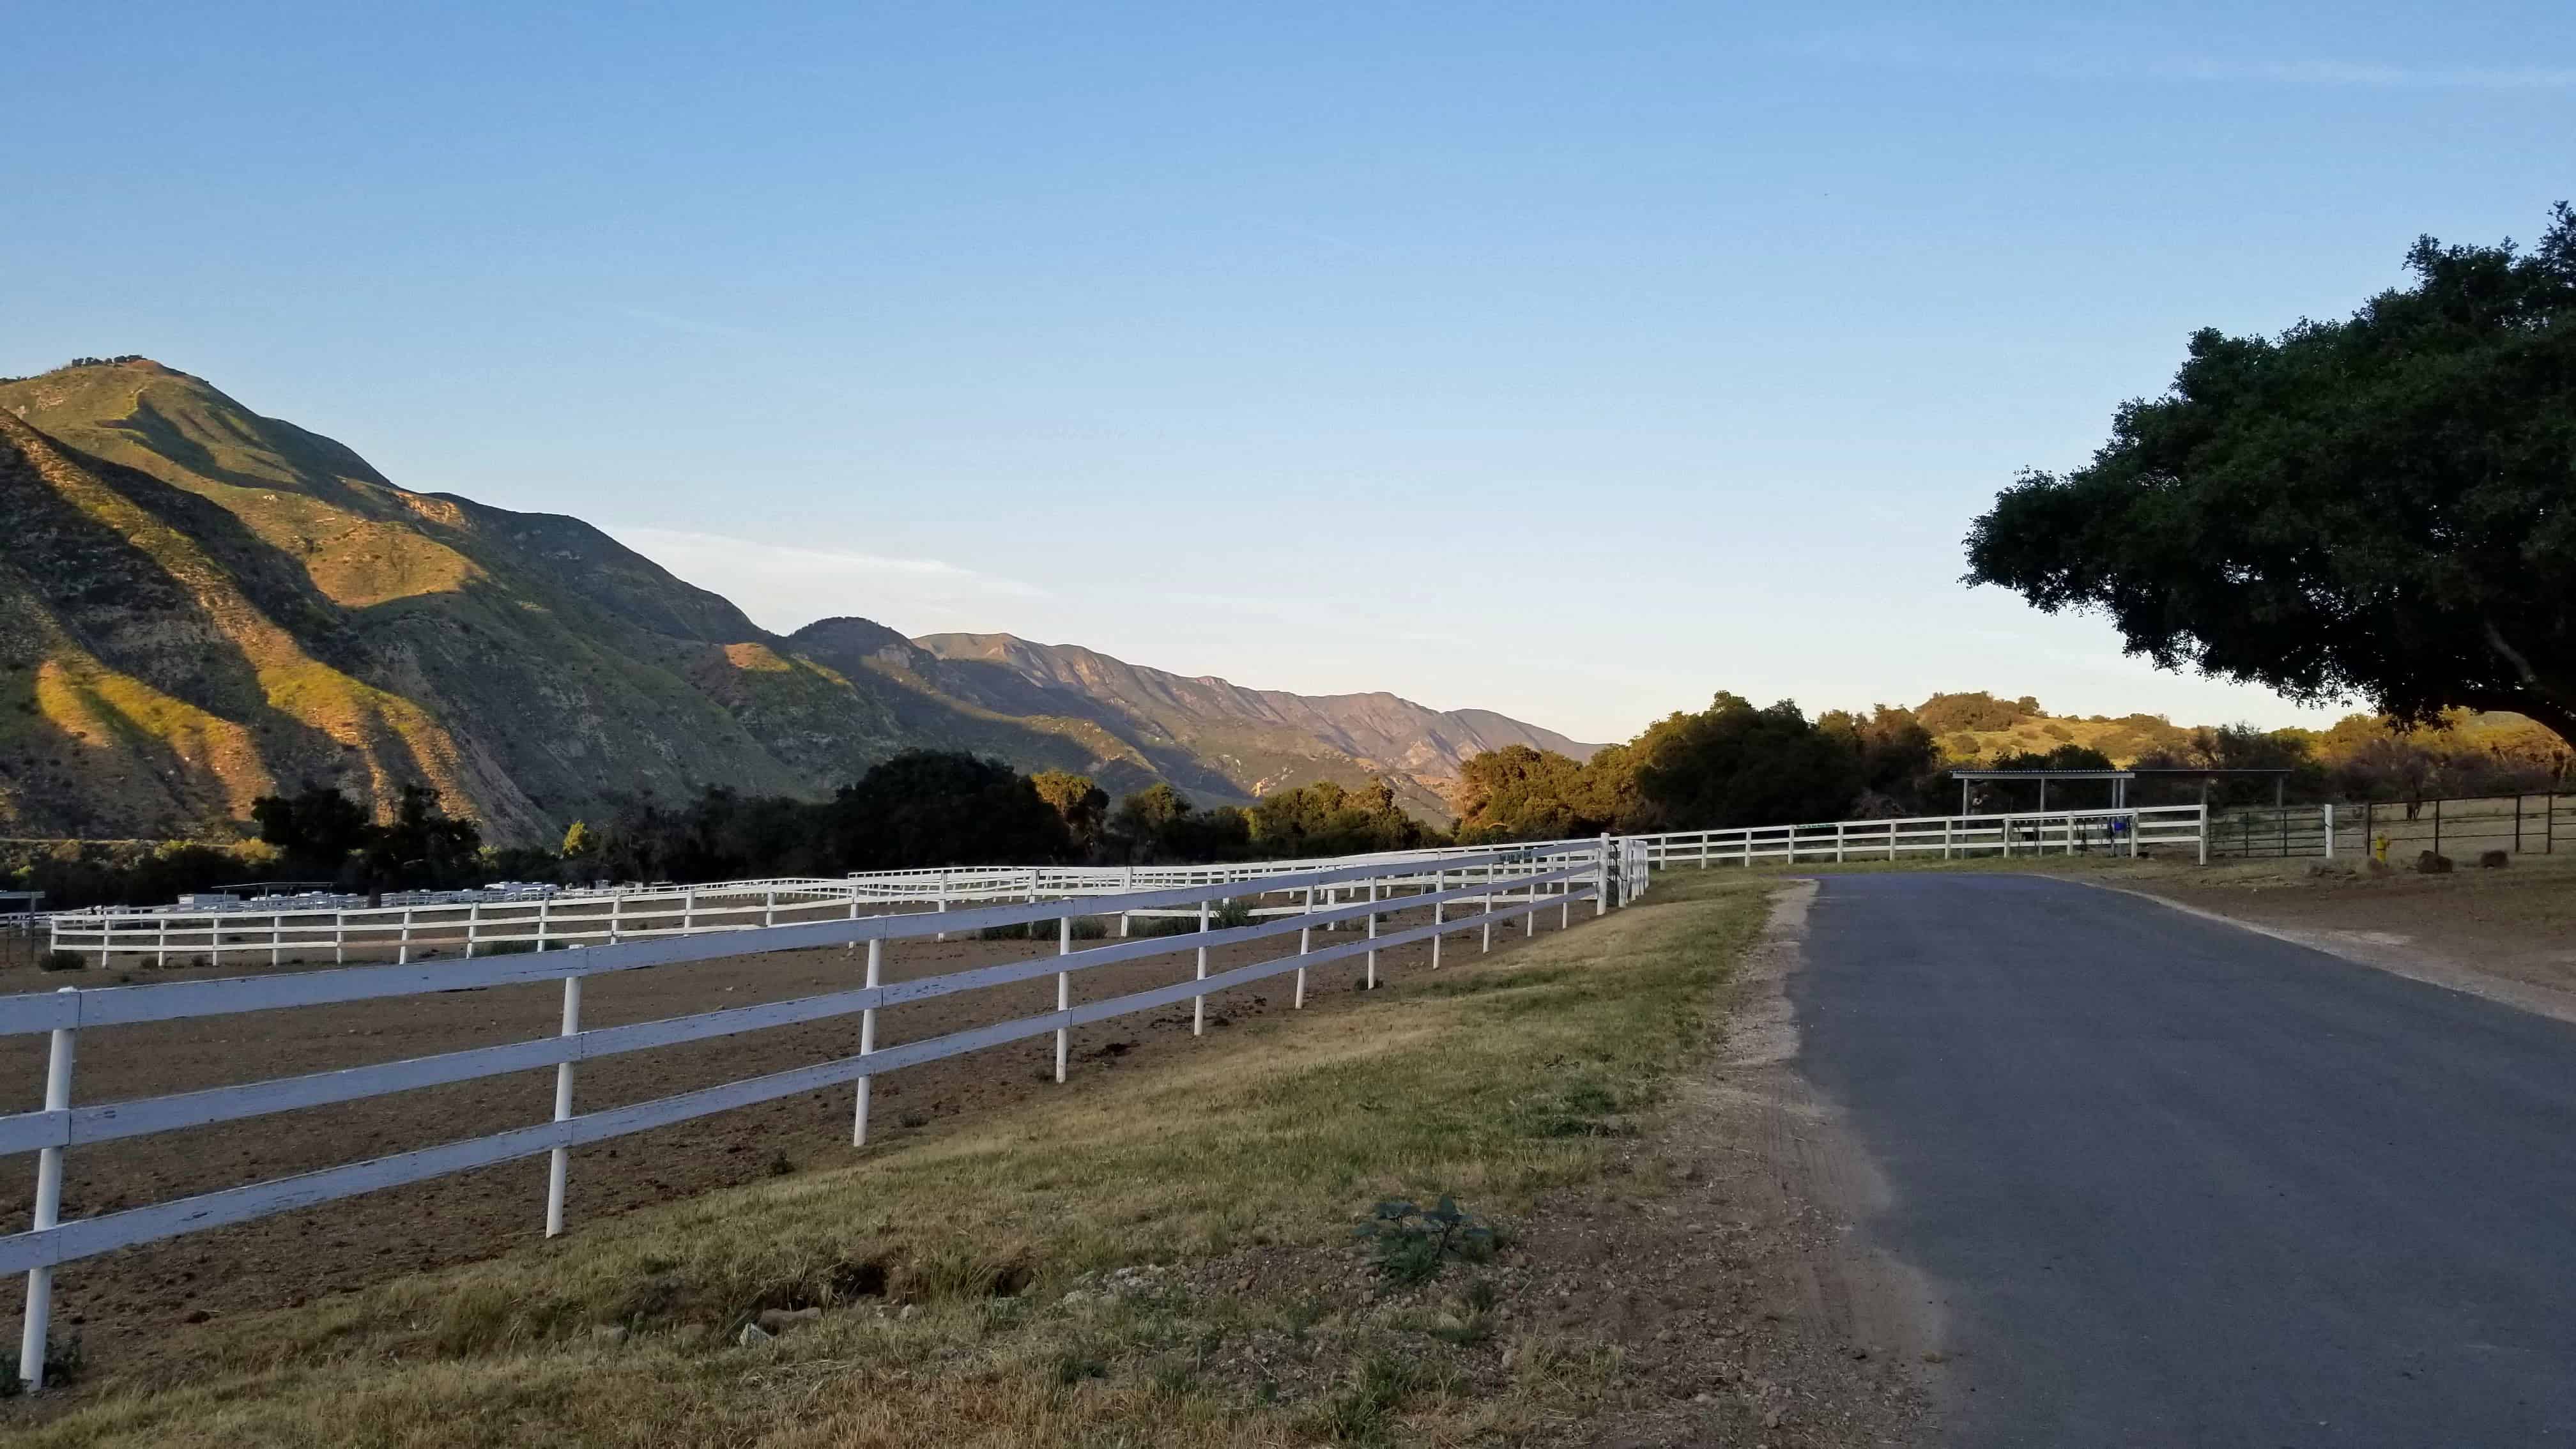 Santa Barbara RV Resort: Stay at Rancho Oso by Thousand Trails